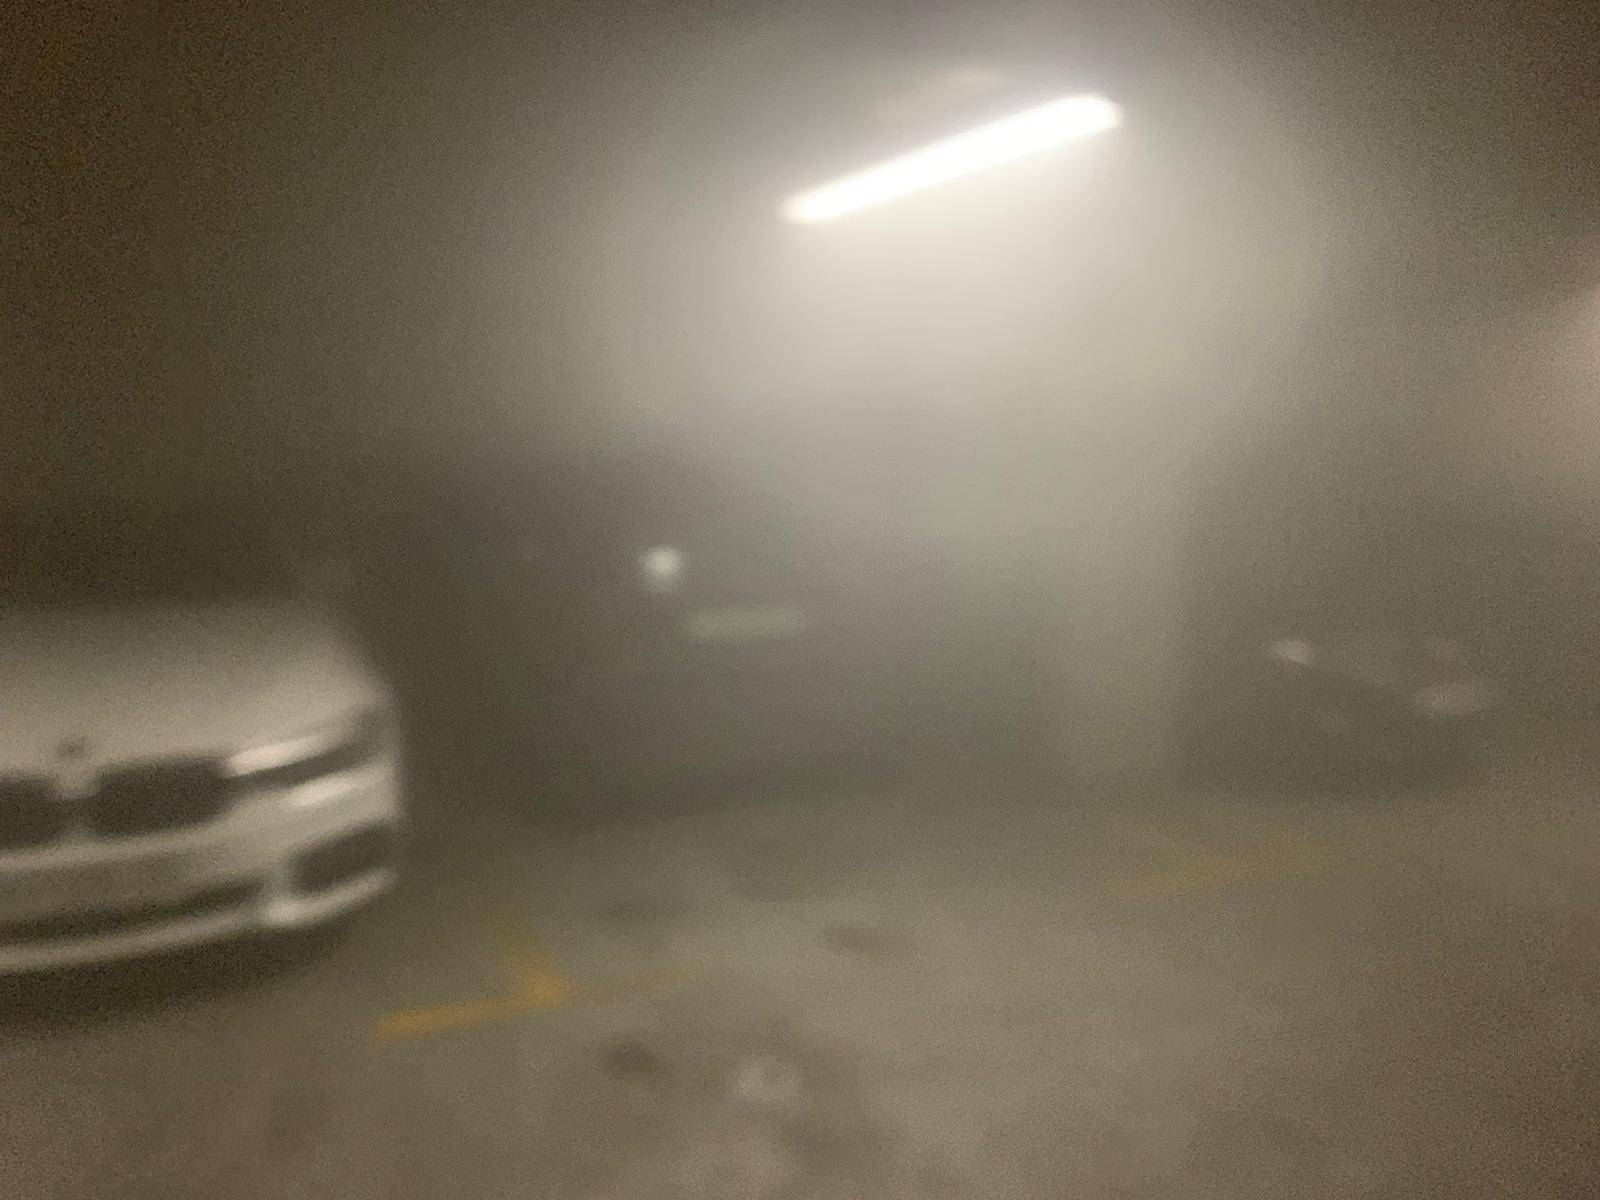 Zapalio se automobil u garaži na Kvatriću: 'Trg se jedva vidio, dim je išao 50 metara u zrak'